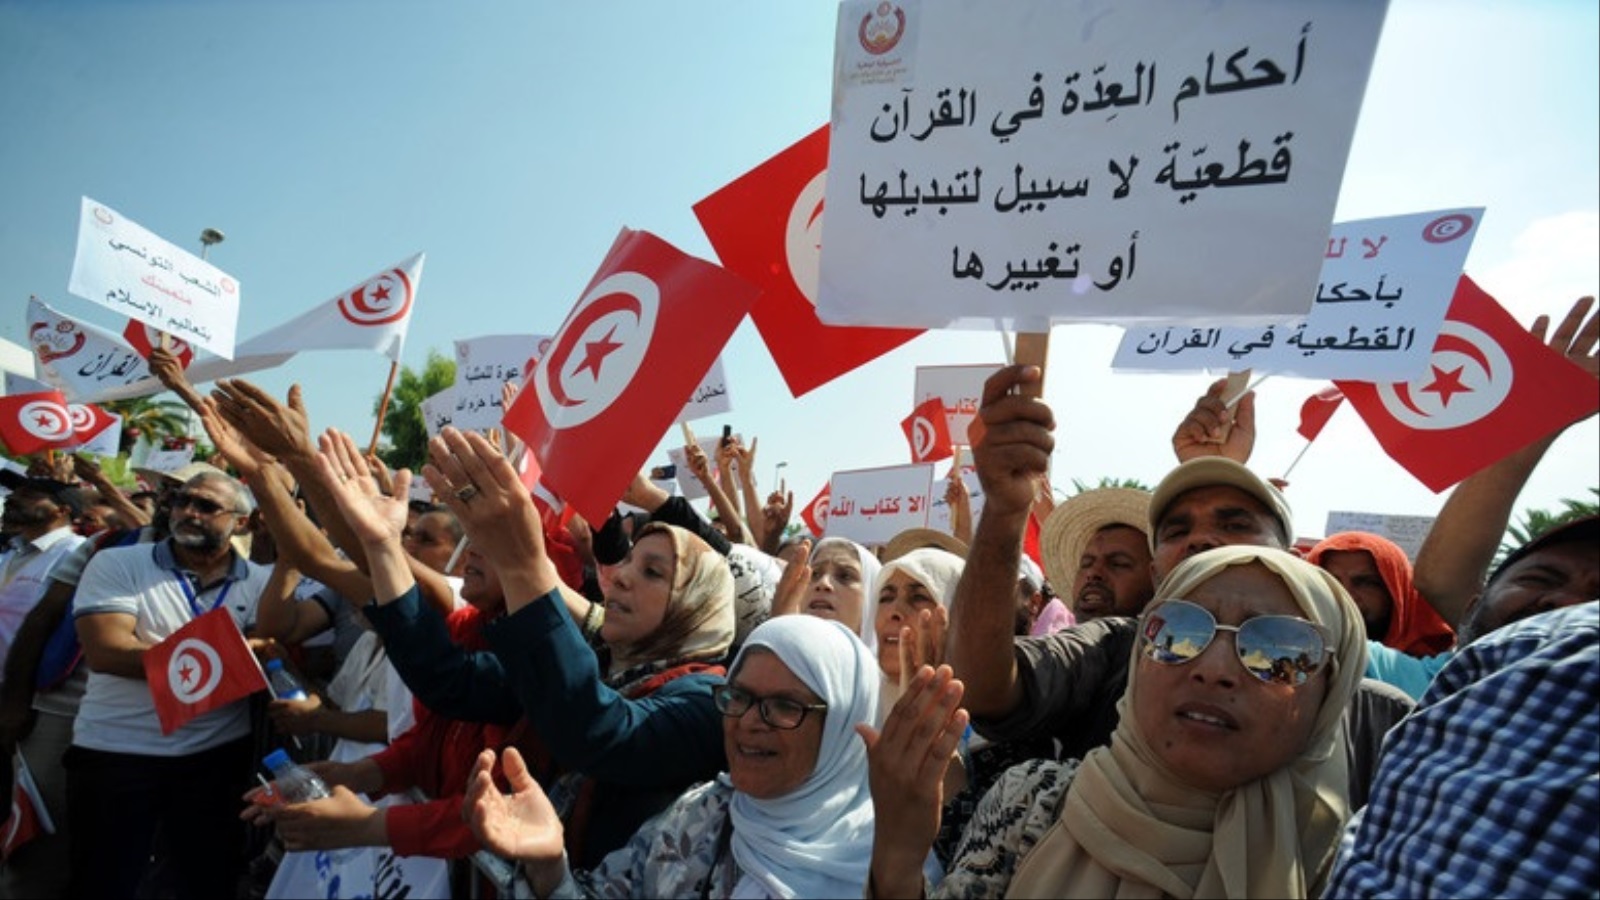 ‪احتج السبت الماضي آلاف التونسيين للتعبير عن رفض المساواة في الإرث بين الجنسين لأنها مخالفة للدستور وتهدد هوية البلاد العربية الإسلامية‬ (الأوروبية)